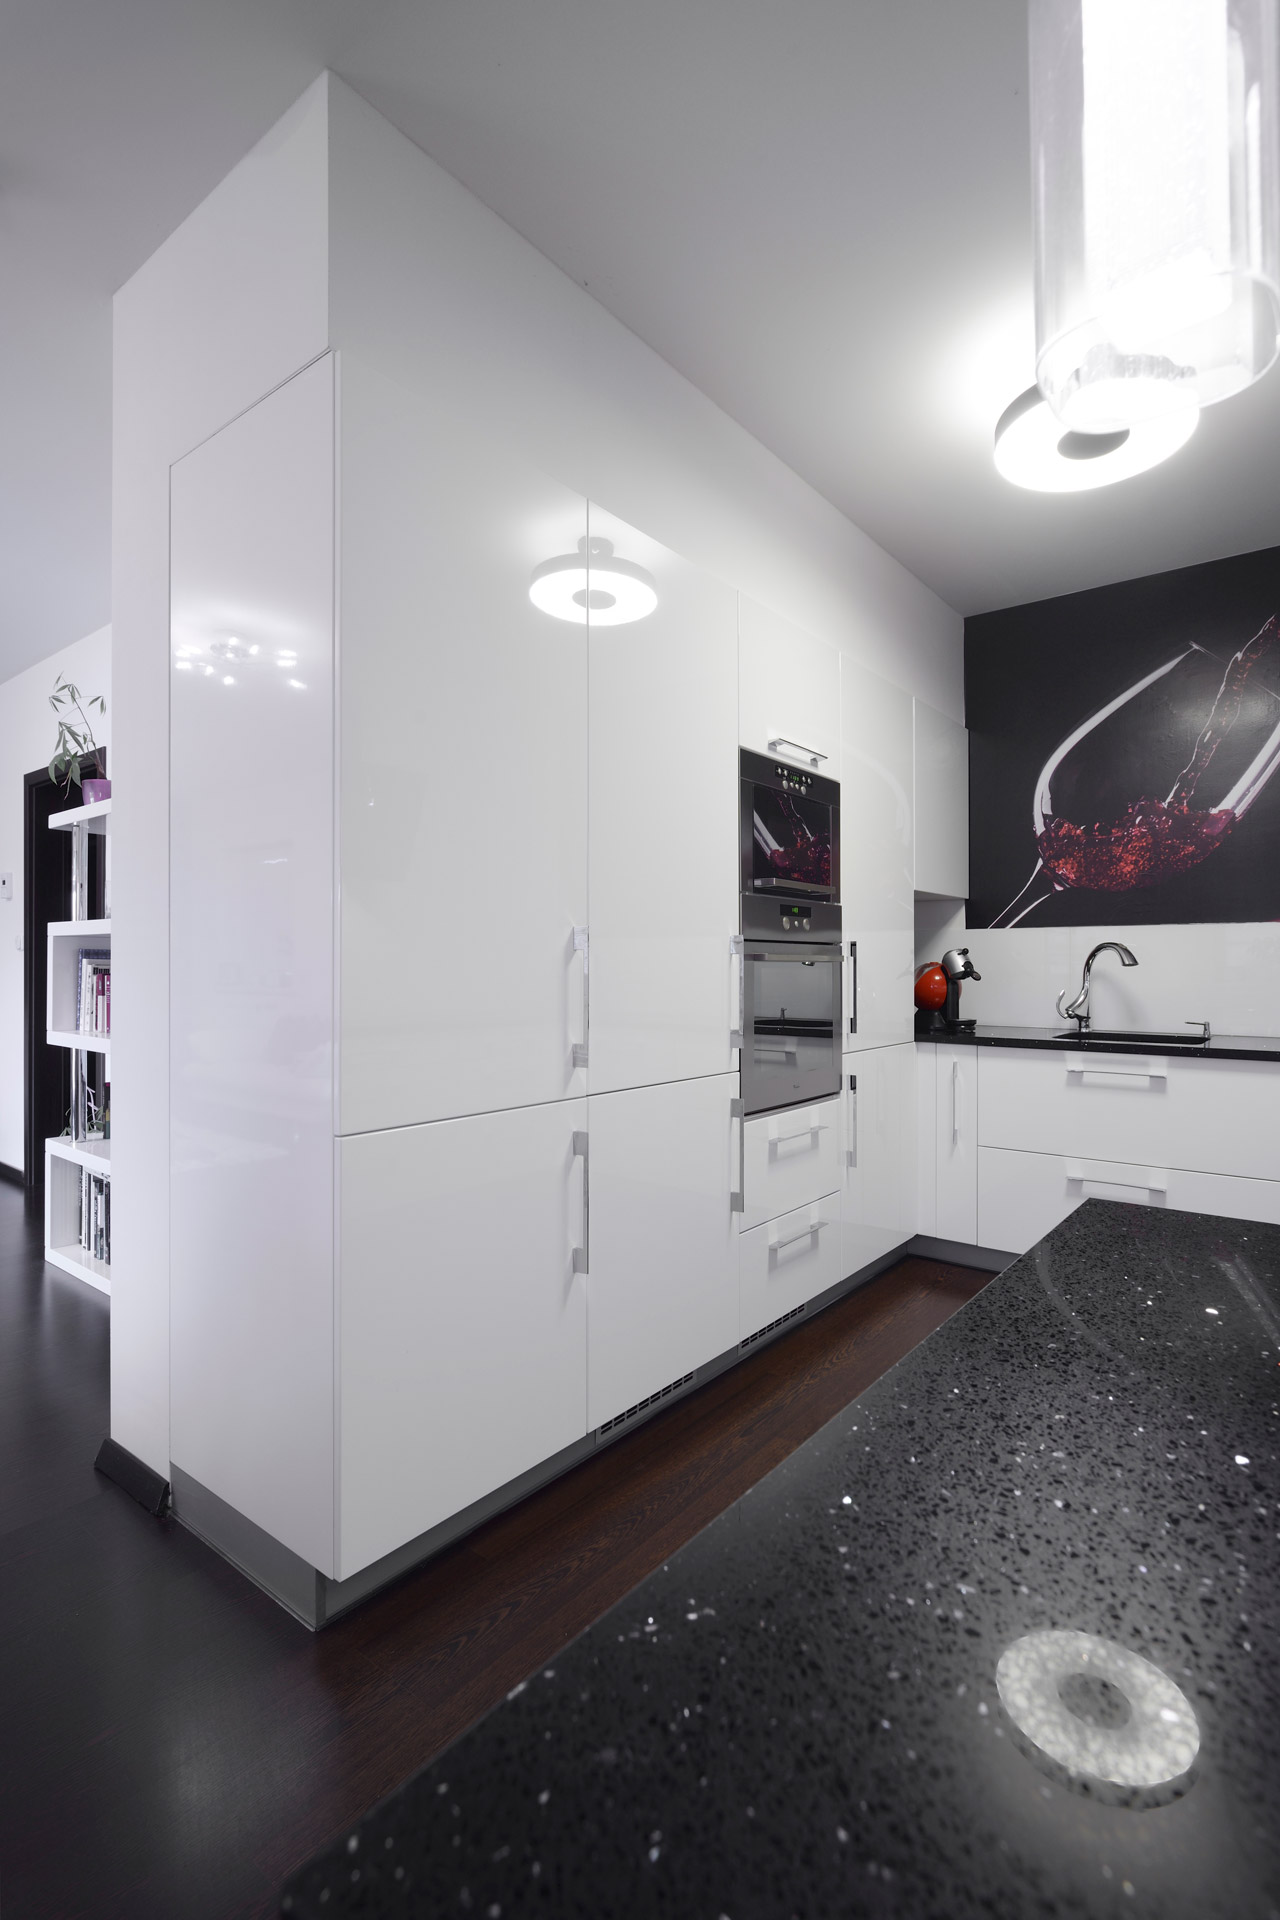 Hanák nábytek Ukázka realizace kuchyně Bílý lak Single byt